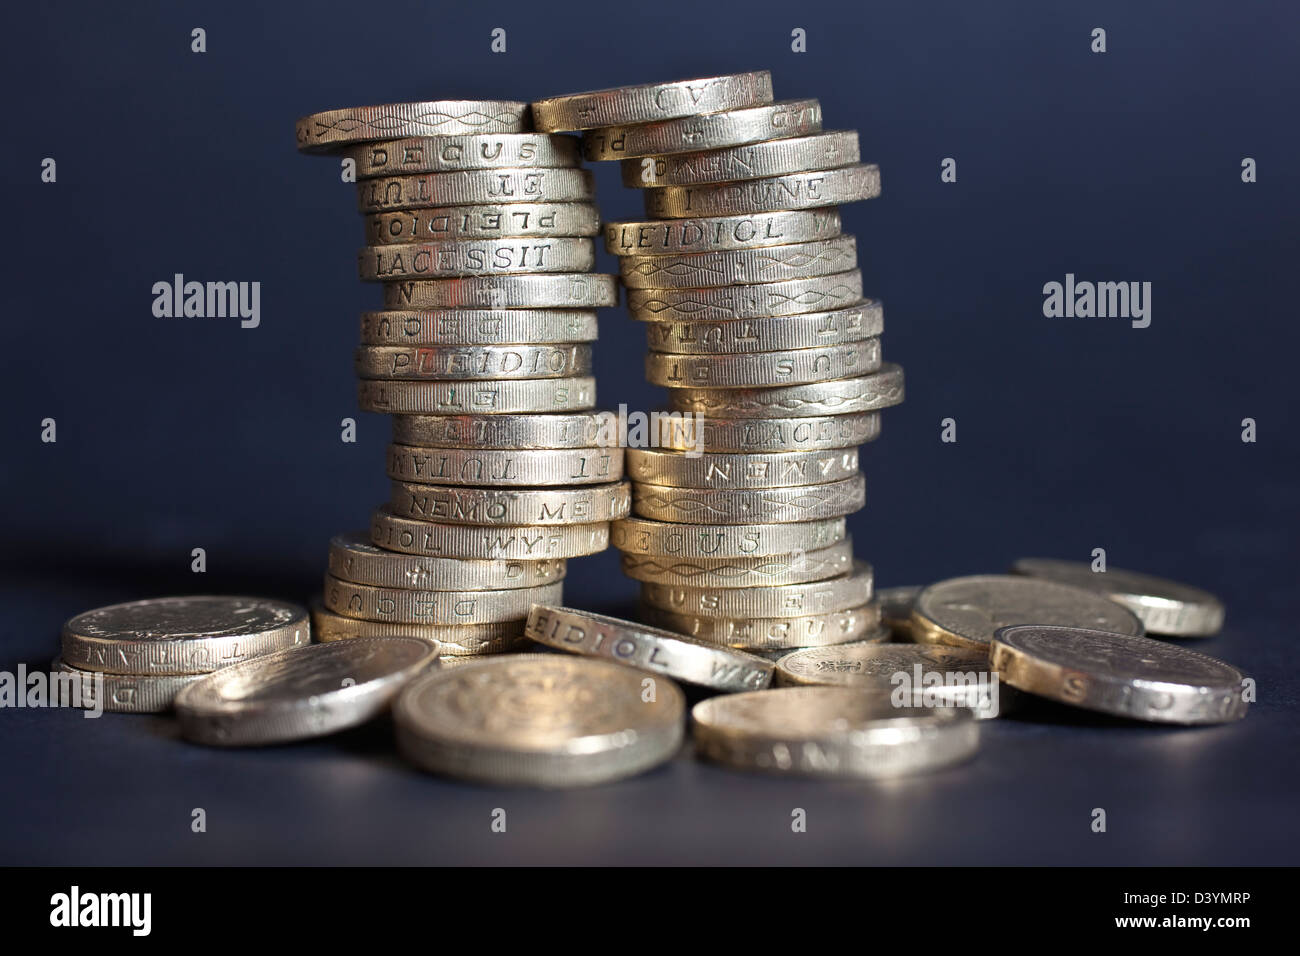 Regno Unito £ 1 monete e moneta fotografati dopo Moody's ha retrocesso il britannico "AAA" rating del credito. Foto Stock